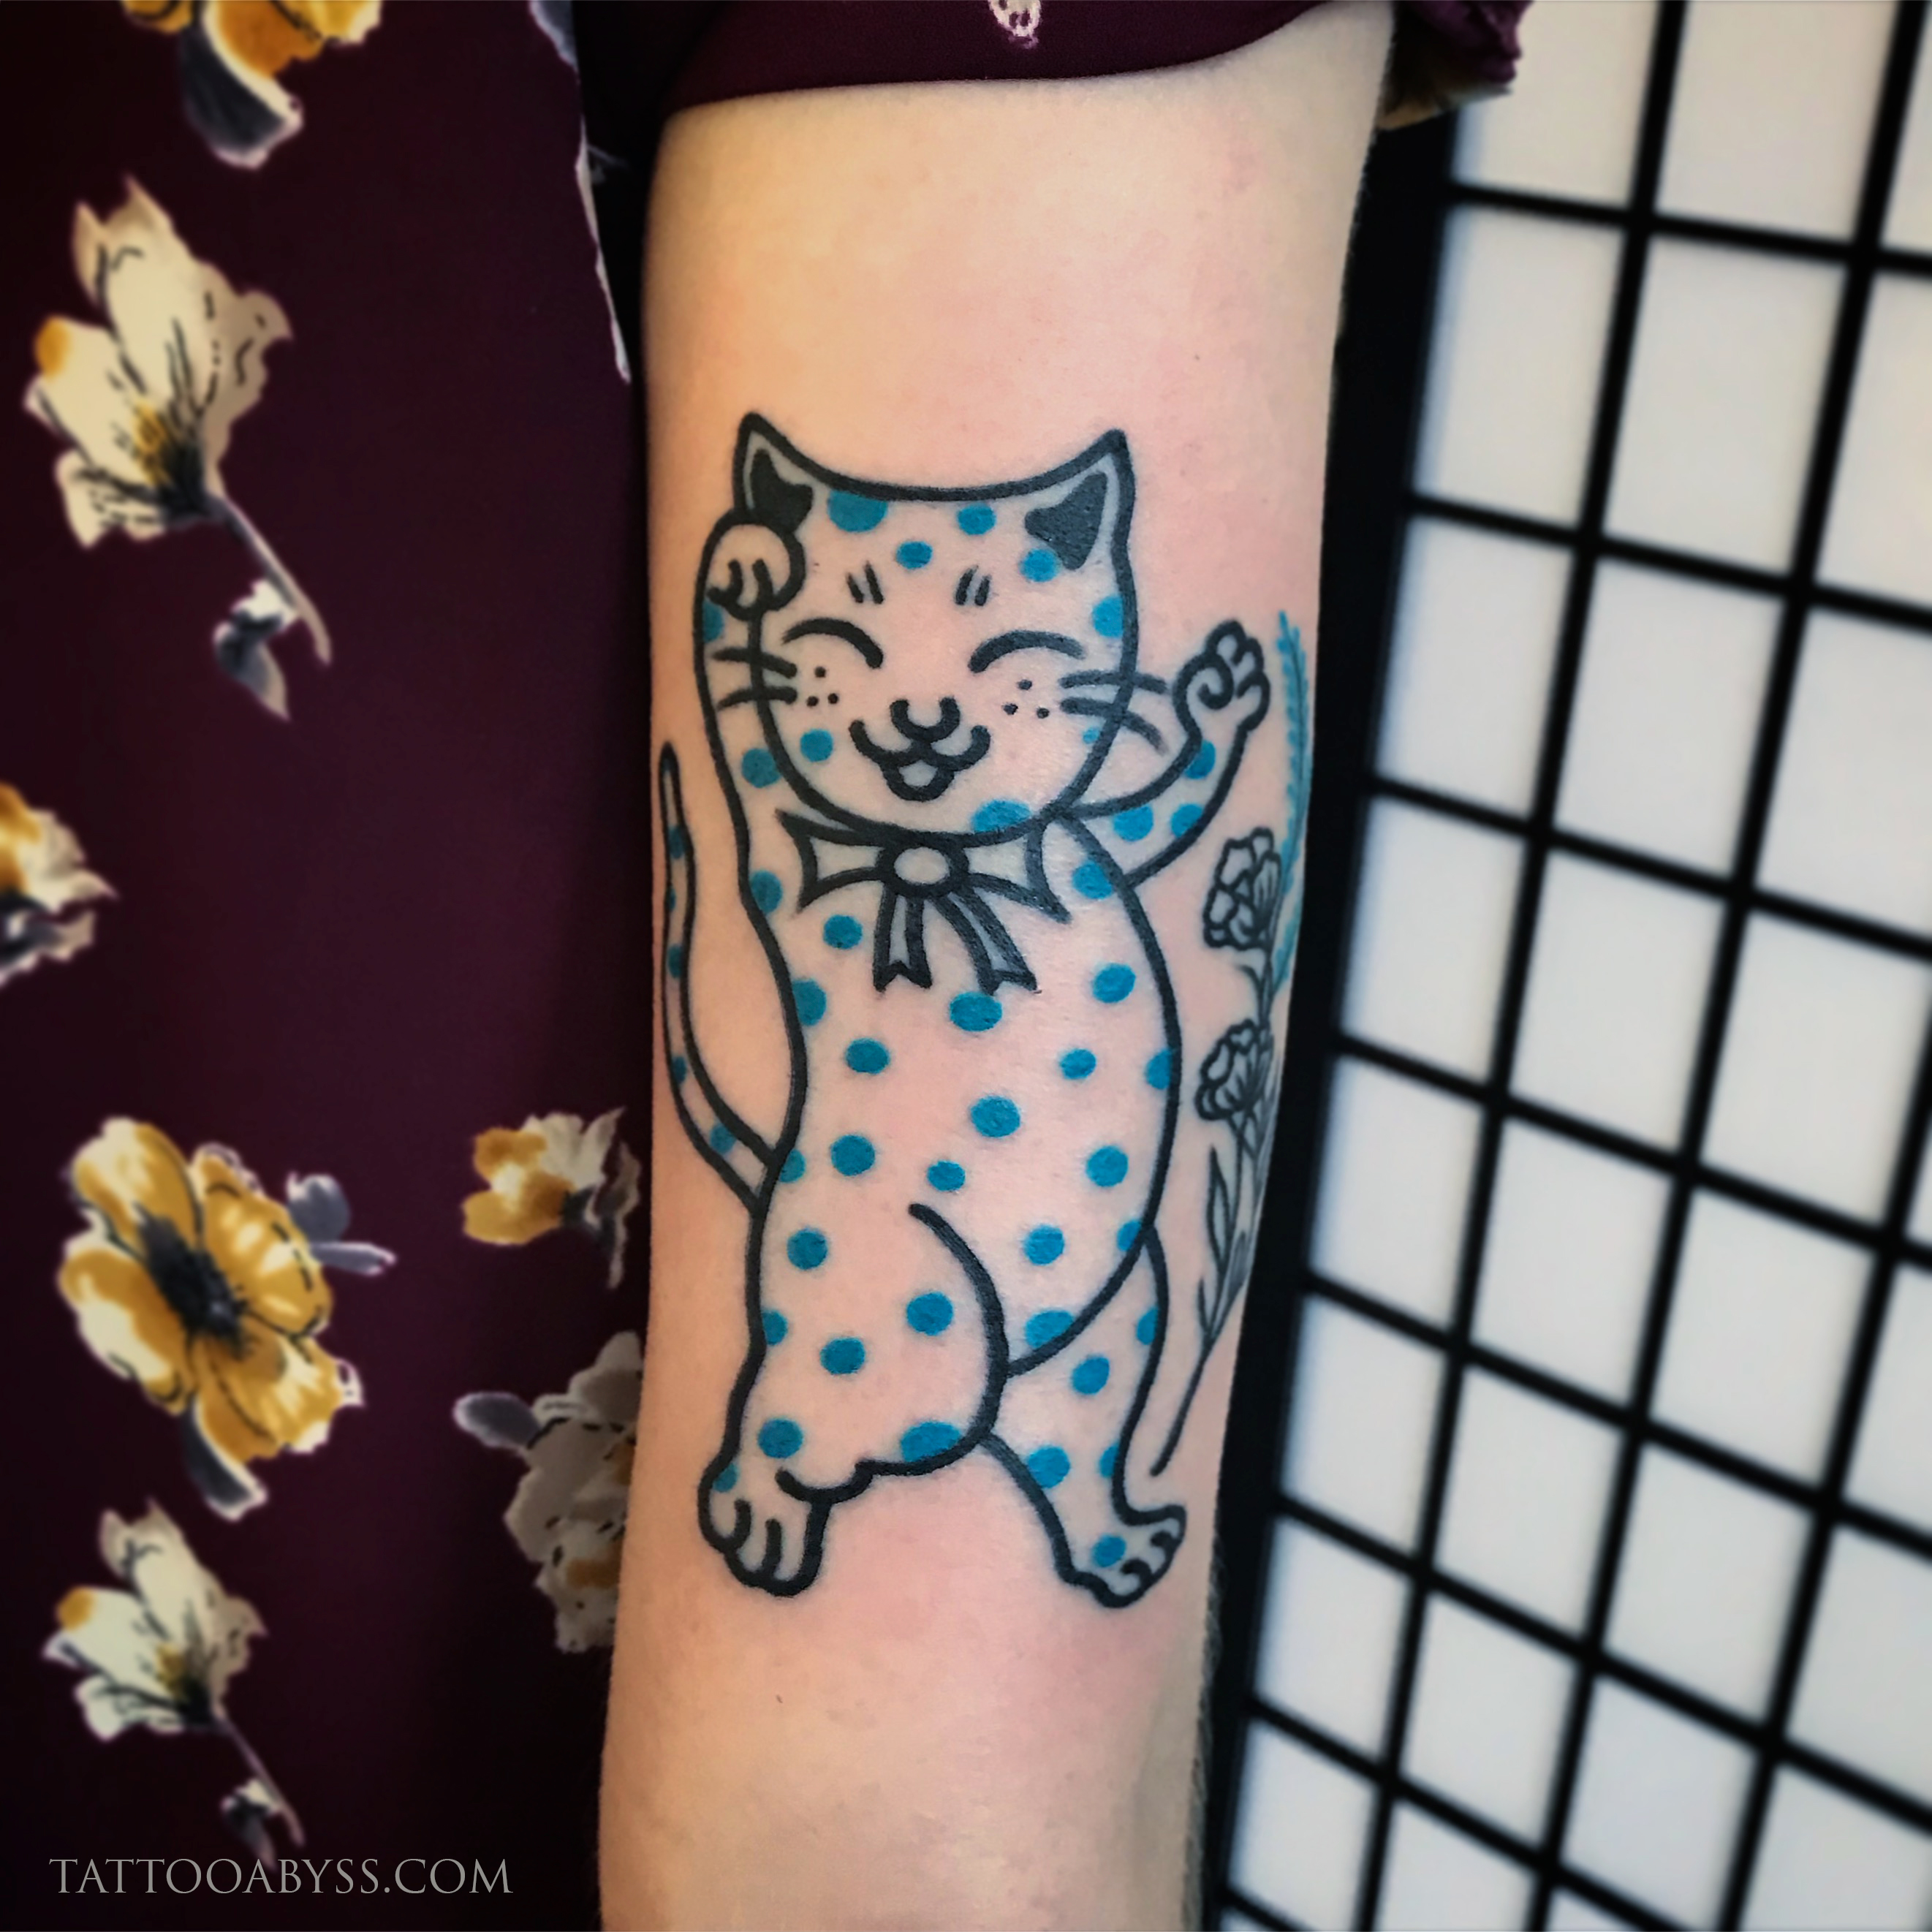 polka-dot-cat-adz-tattoo-abyss